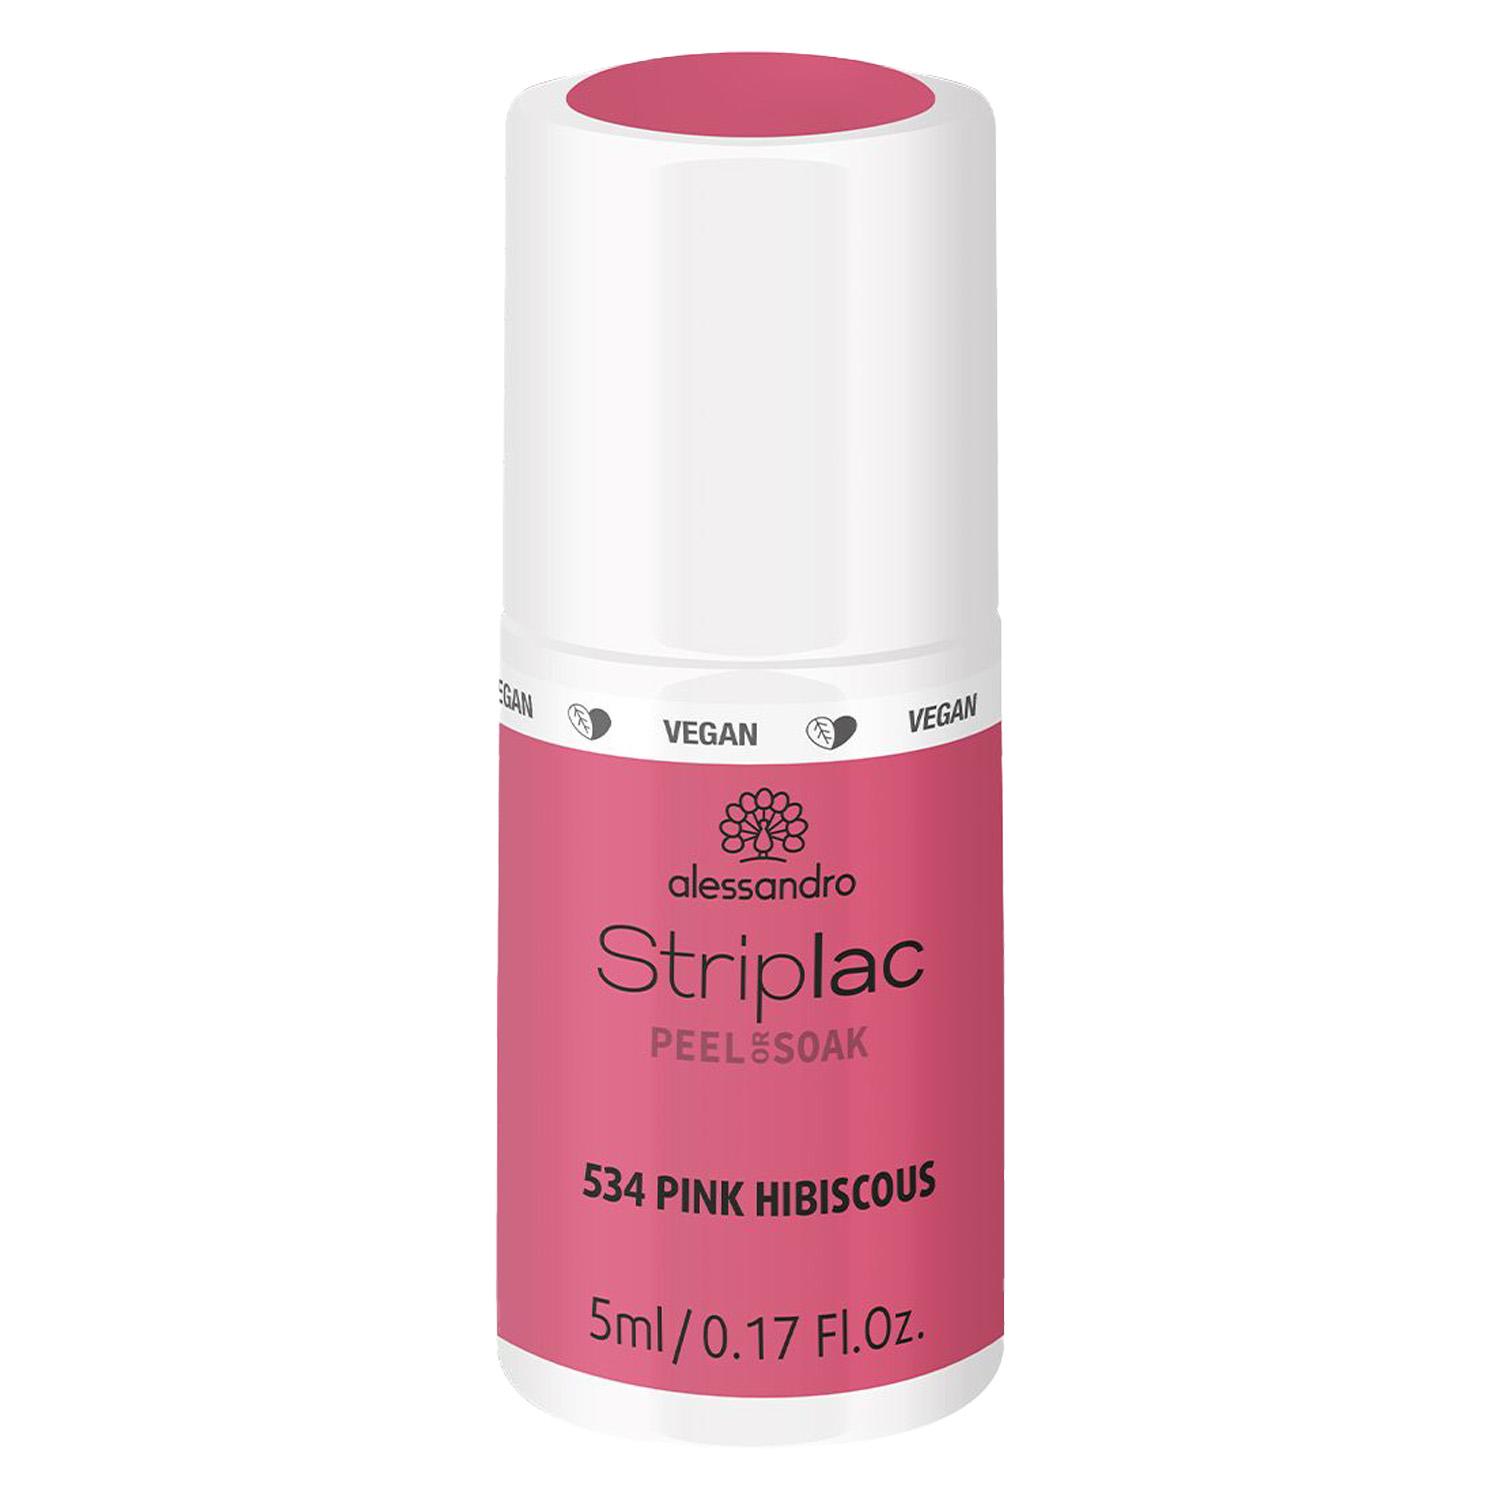 Striplac Peel or Soak - Pink Hibiscous